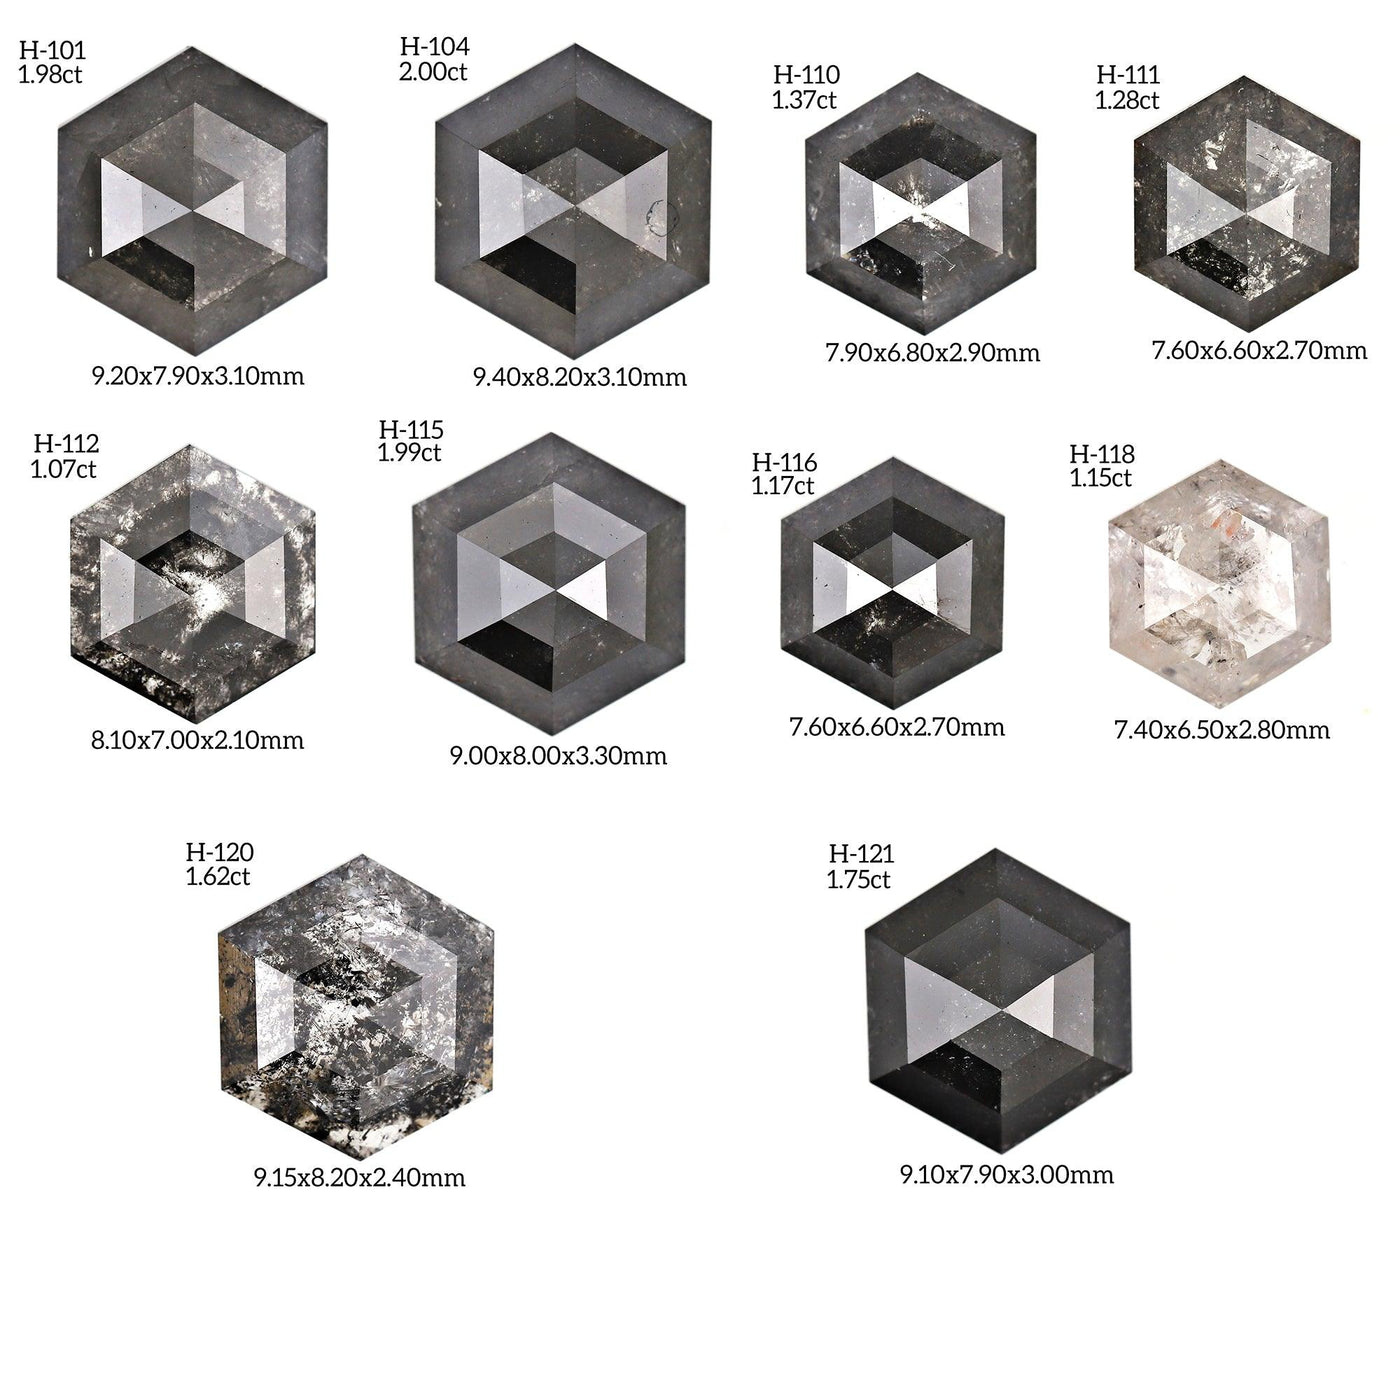 H211 - Salt and pepper hexagon diamond